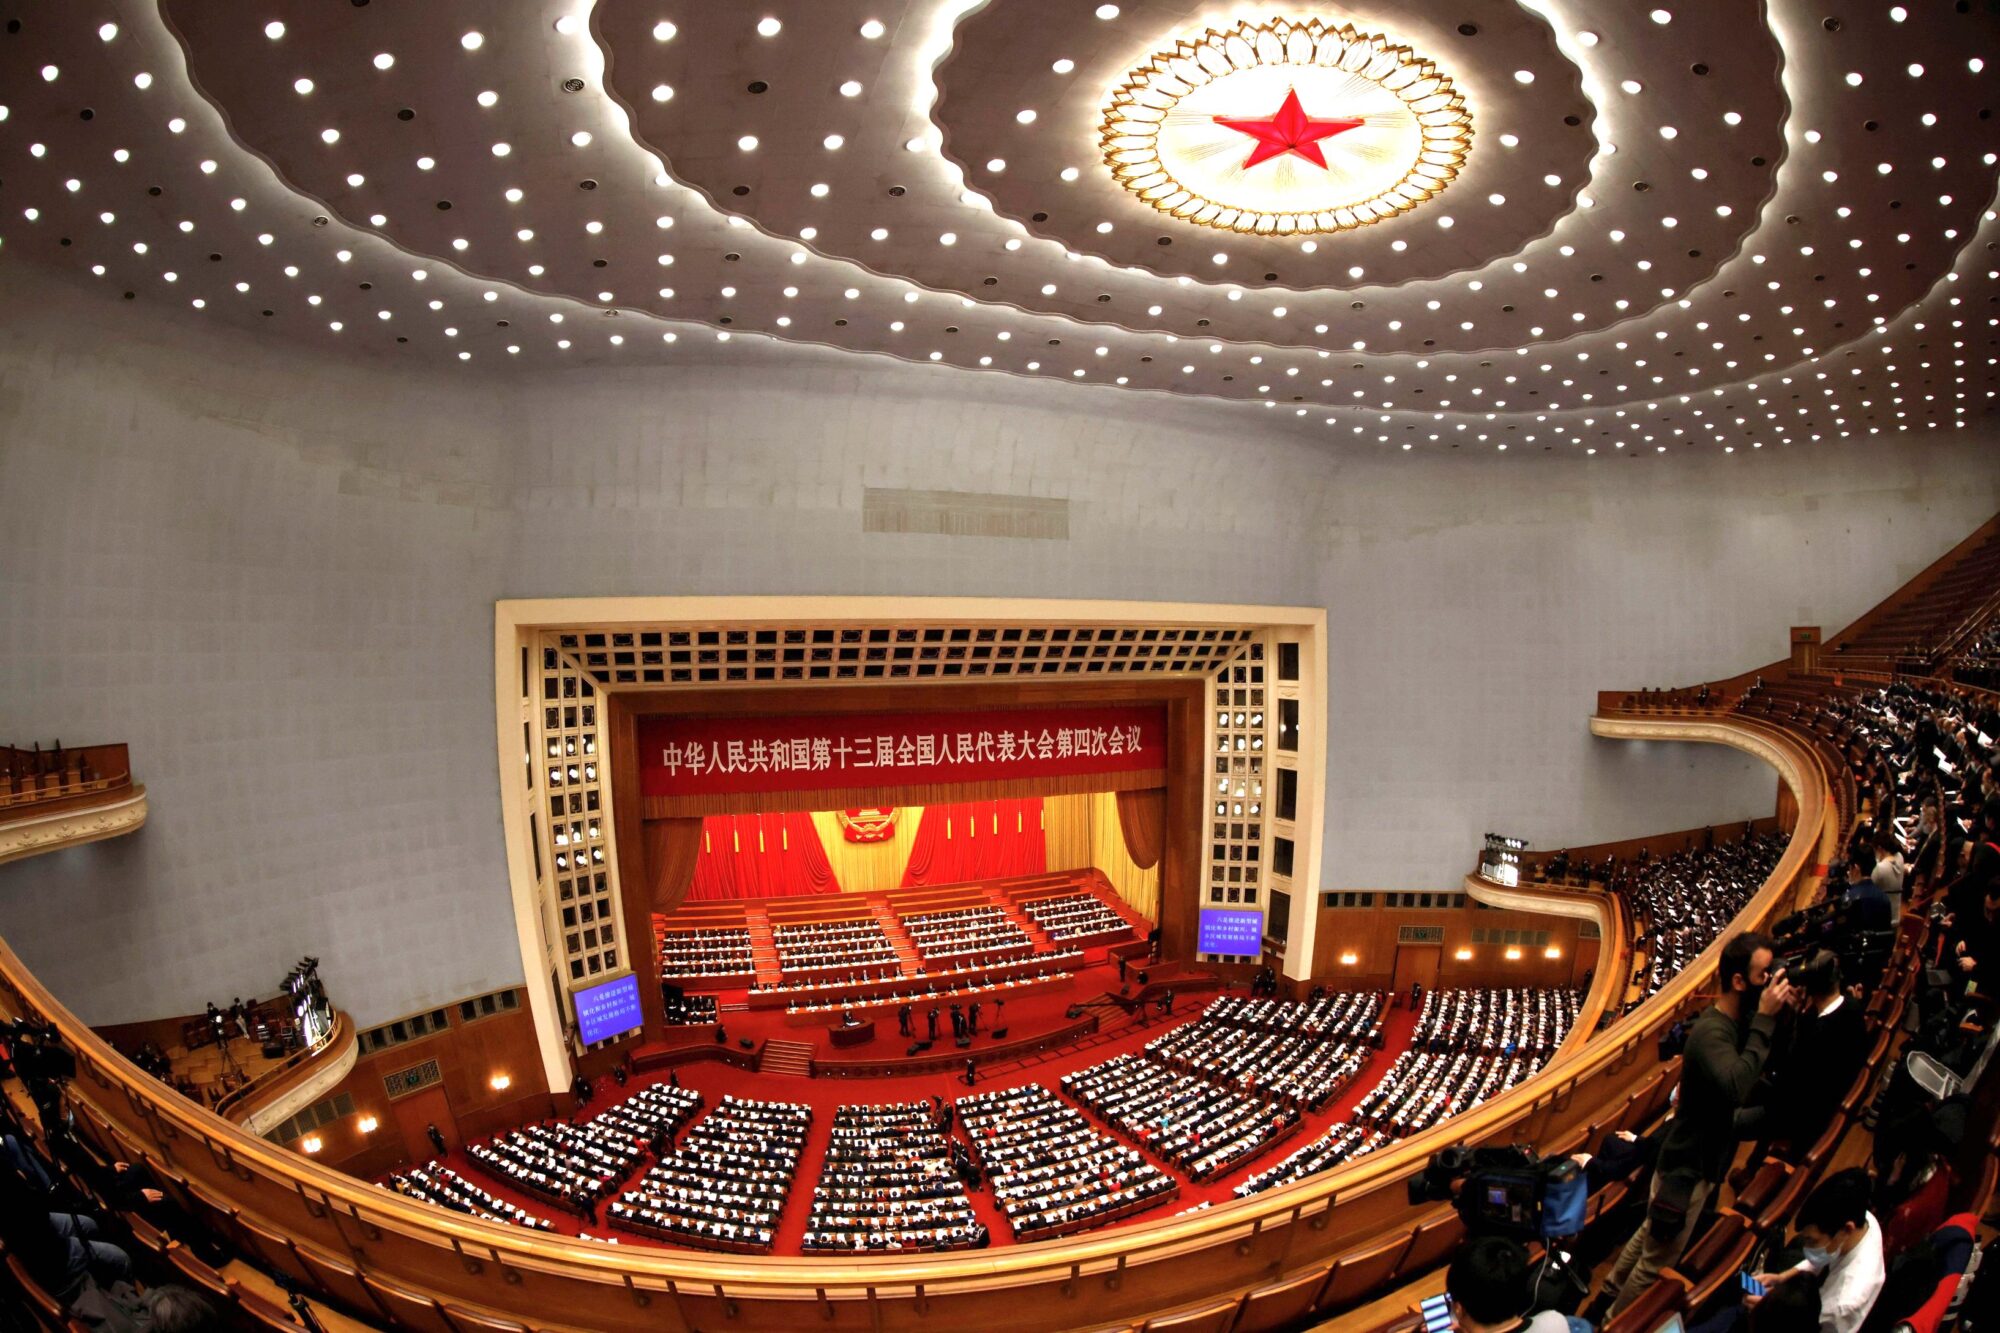 <p>A sessão de abertura do Congresso Nacional do Povo em Beijing, em 5 de março (Imagem: Carlos Garcia Rawlins / Alamy)</p> <div id="gtx-trans" style="position: absolute; left: 385px; top: -13.7812px;"> <div class="gtx-trans-icon"></div> </div>